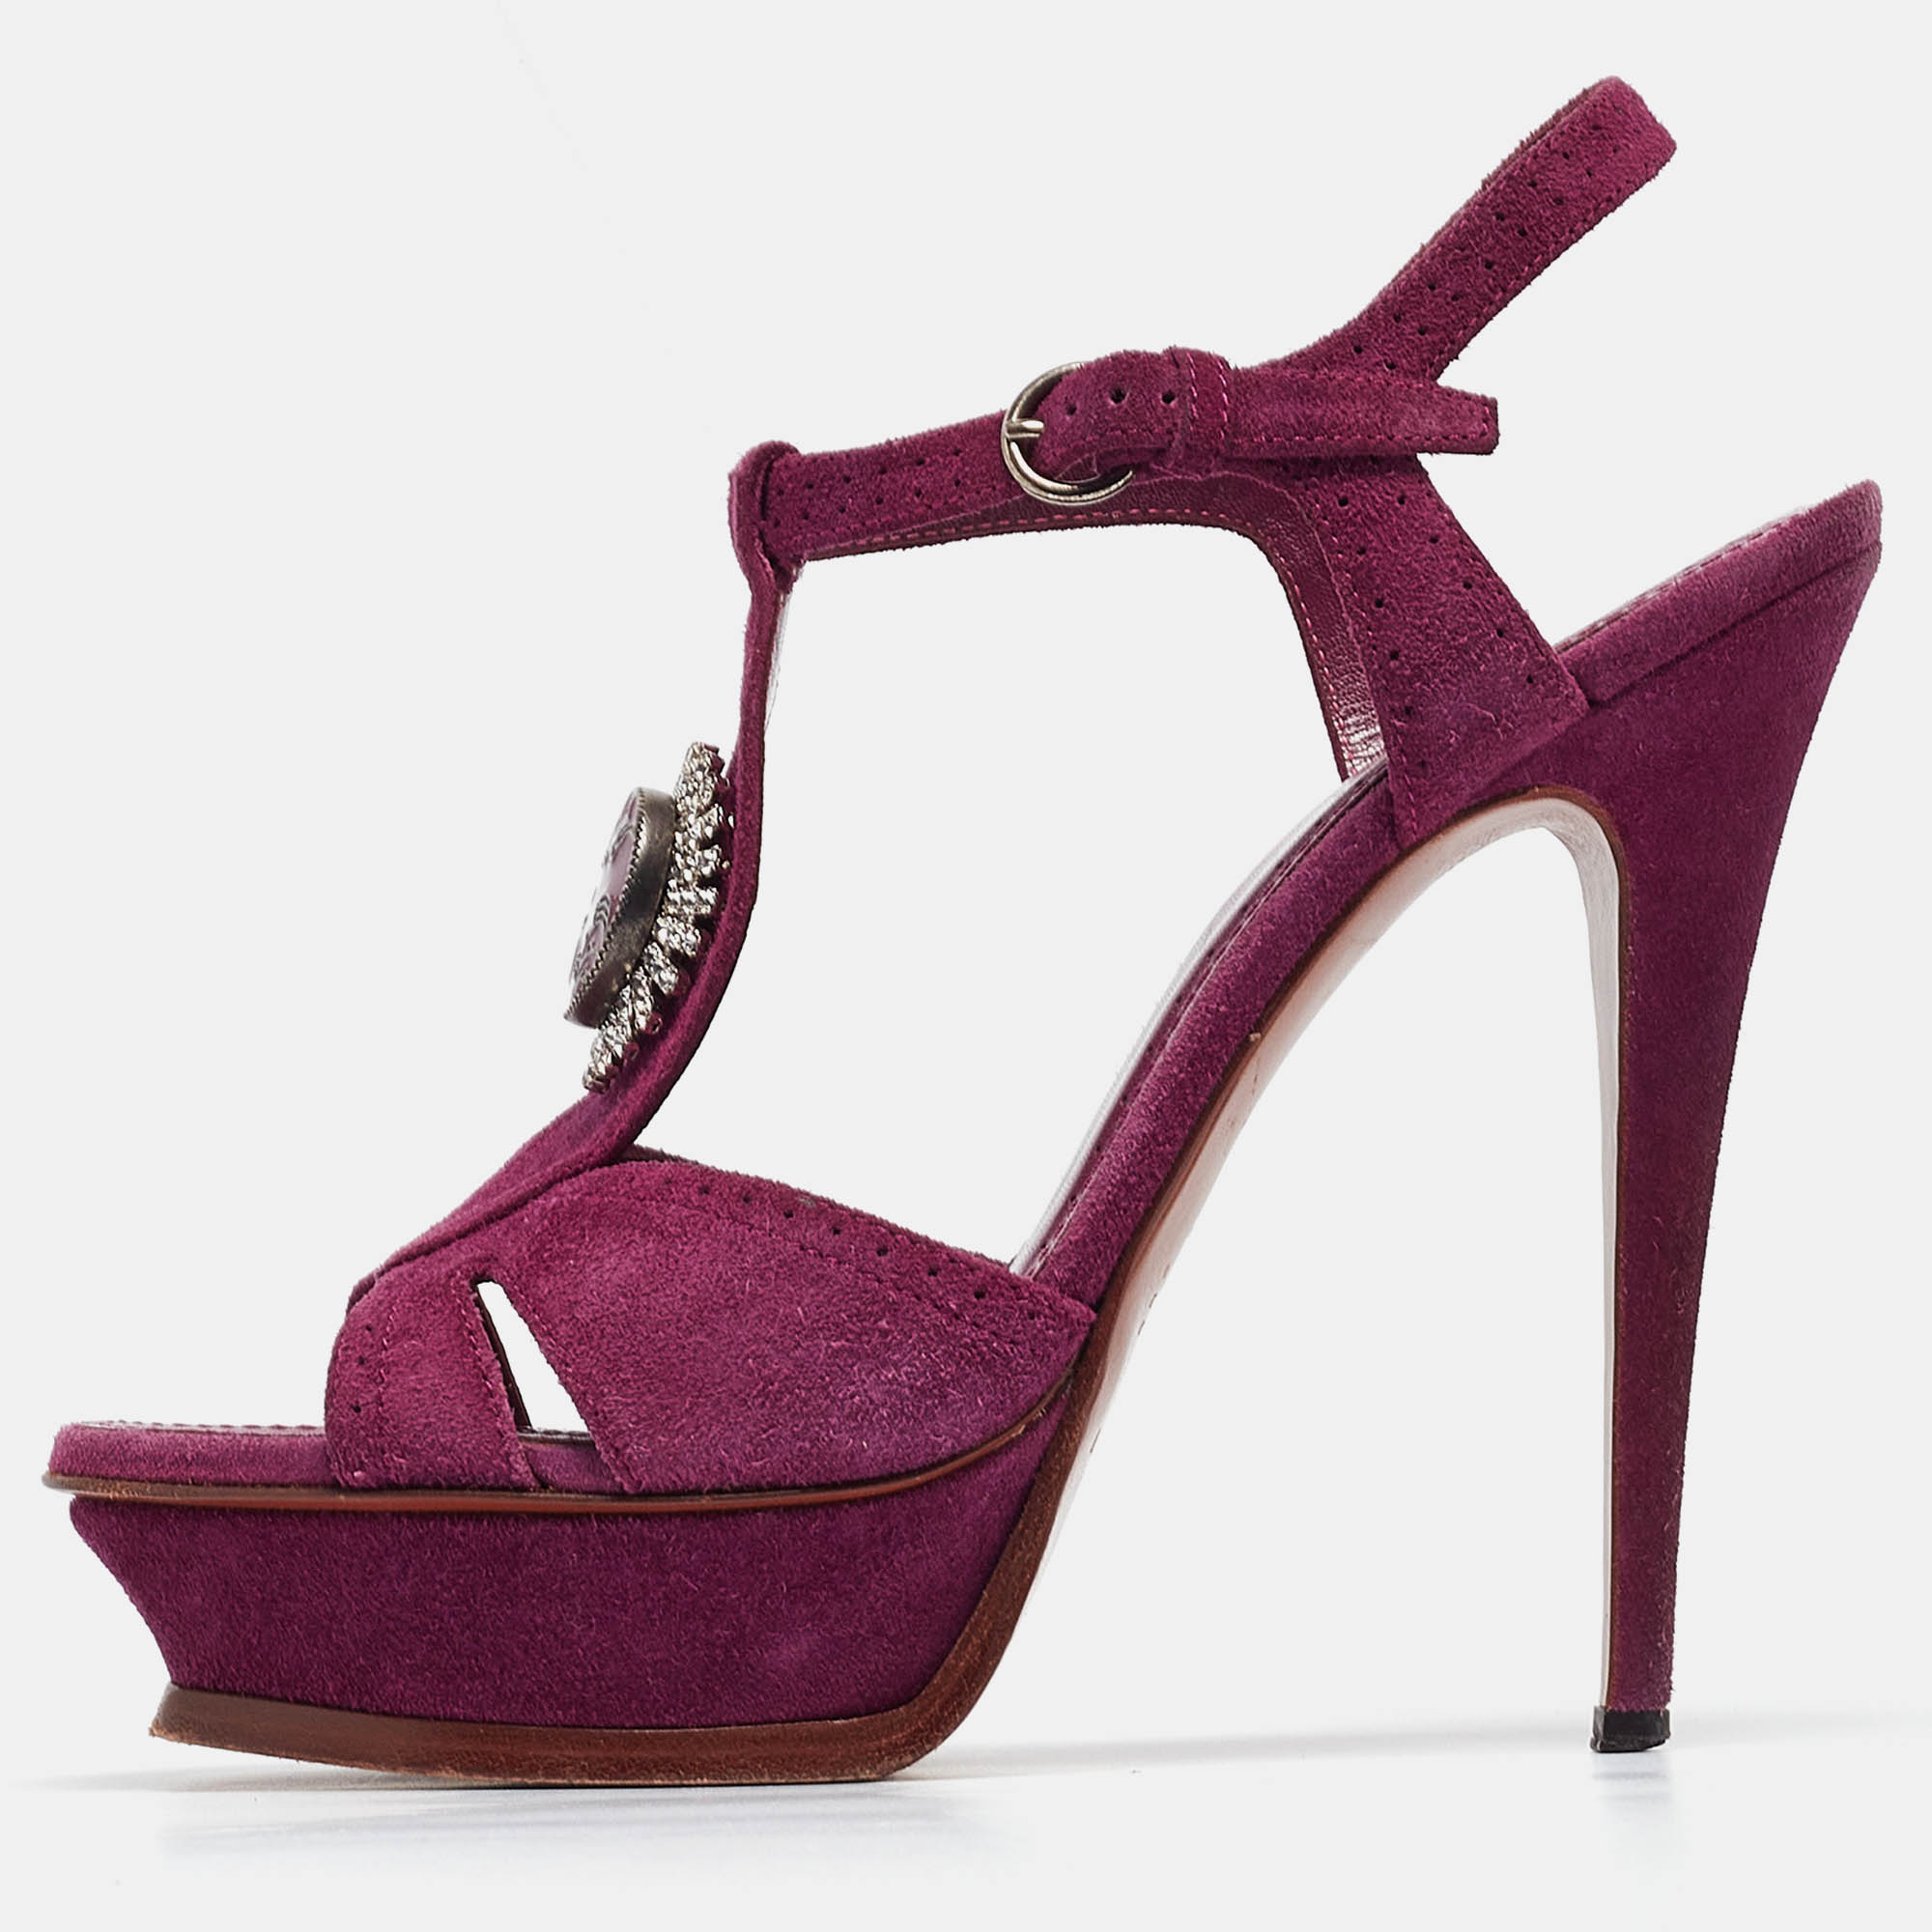 Yves saint laurent purple suede buckle detail platform ankle strap sandals size 40